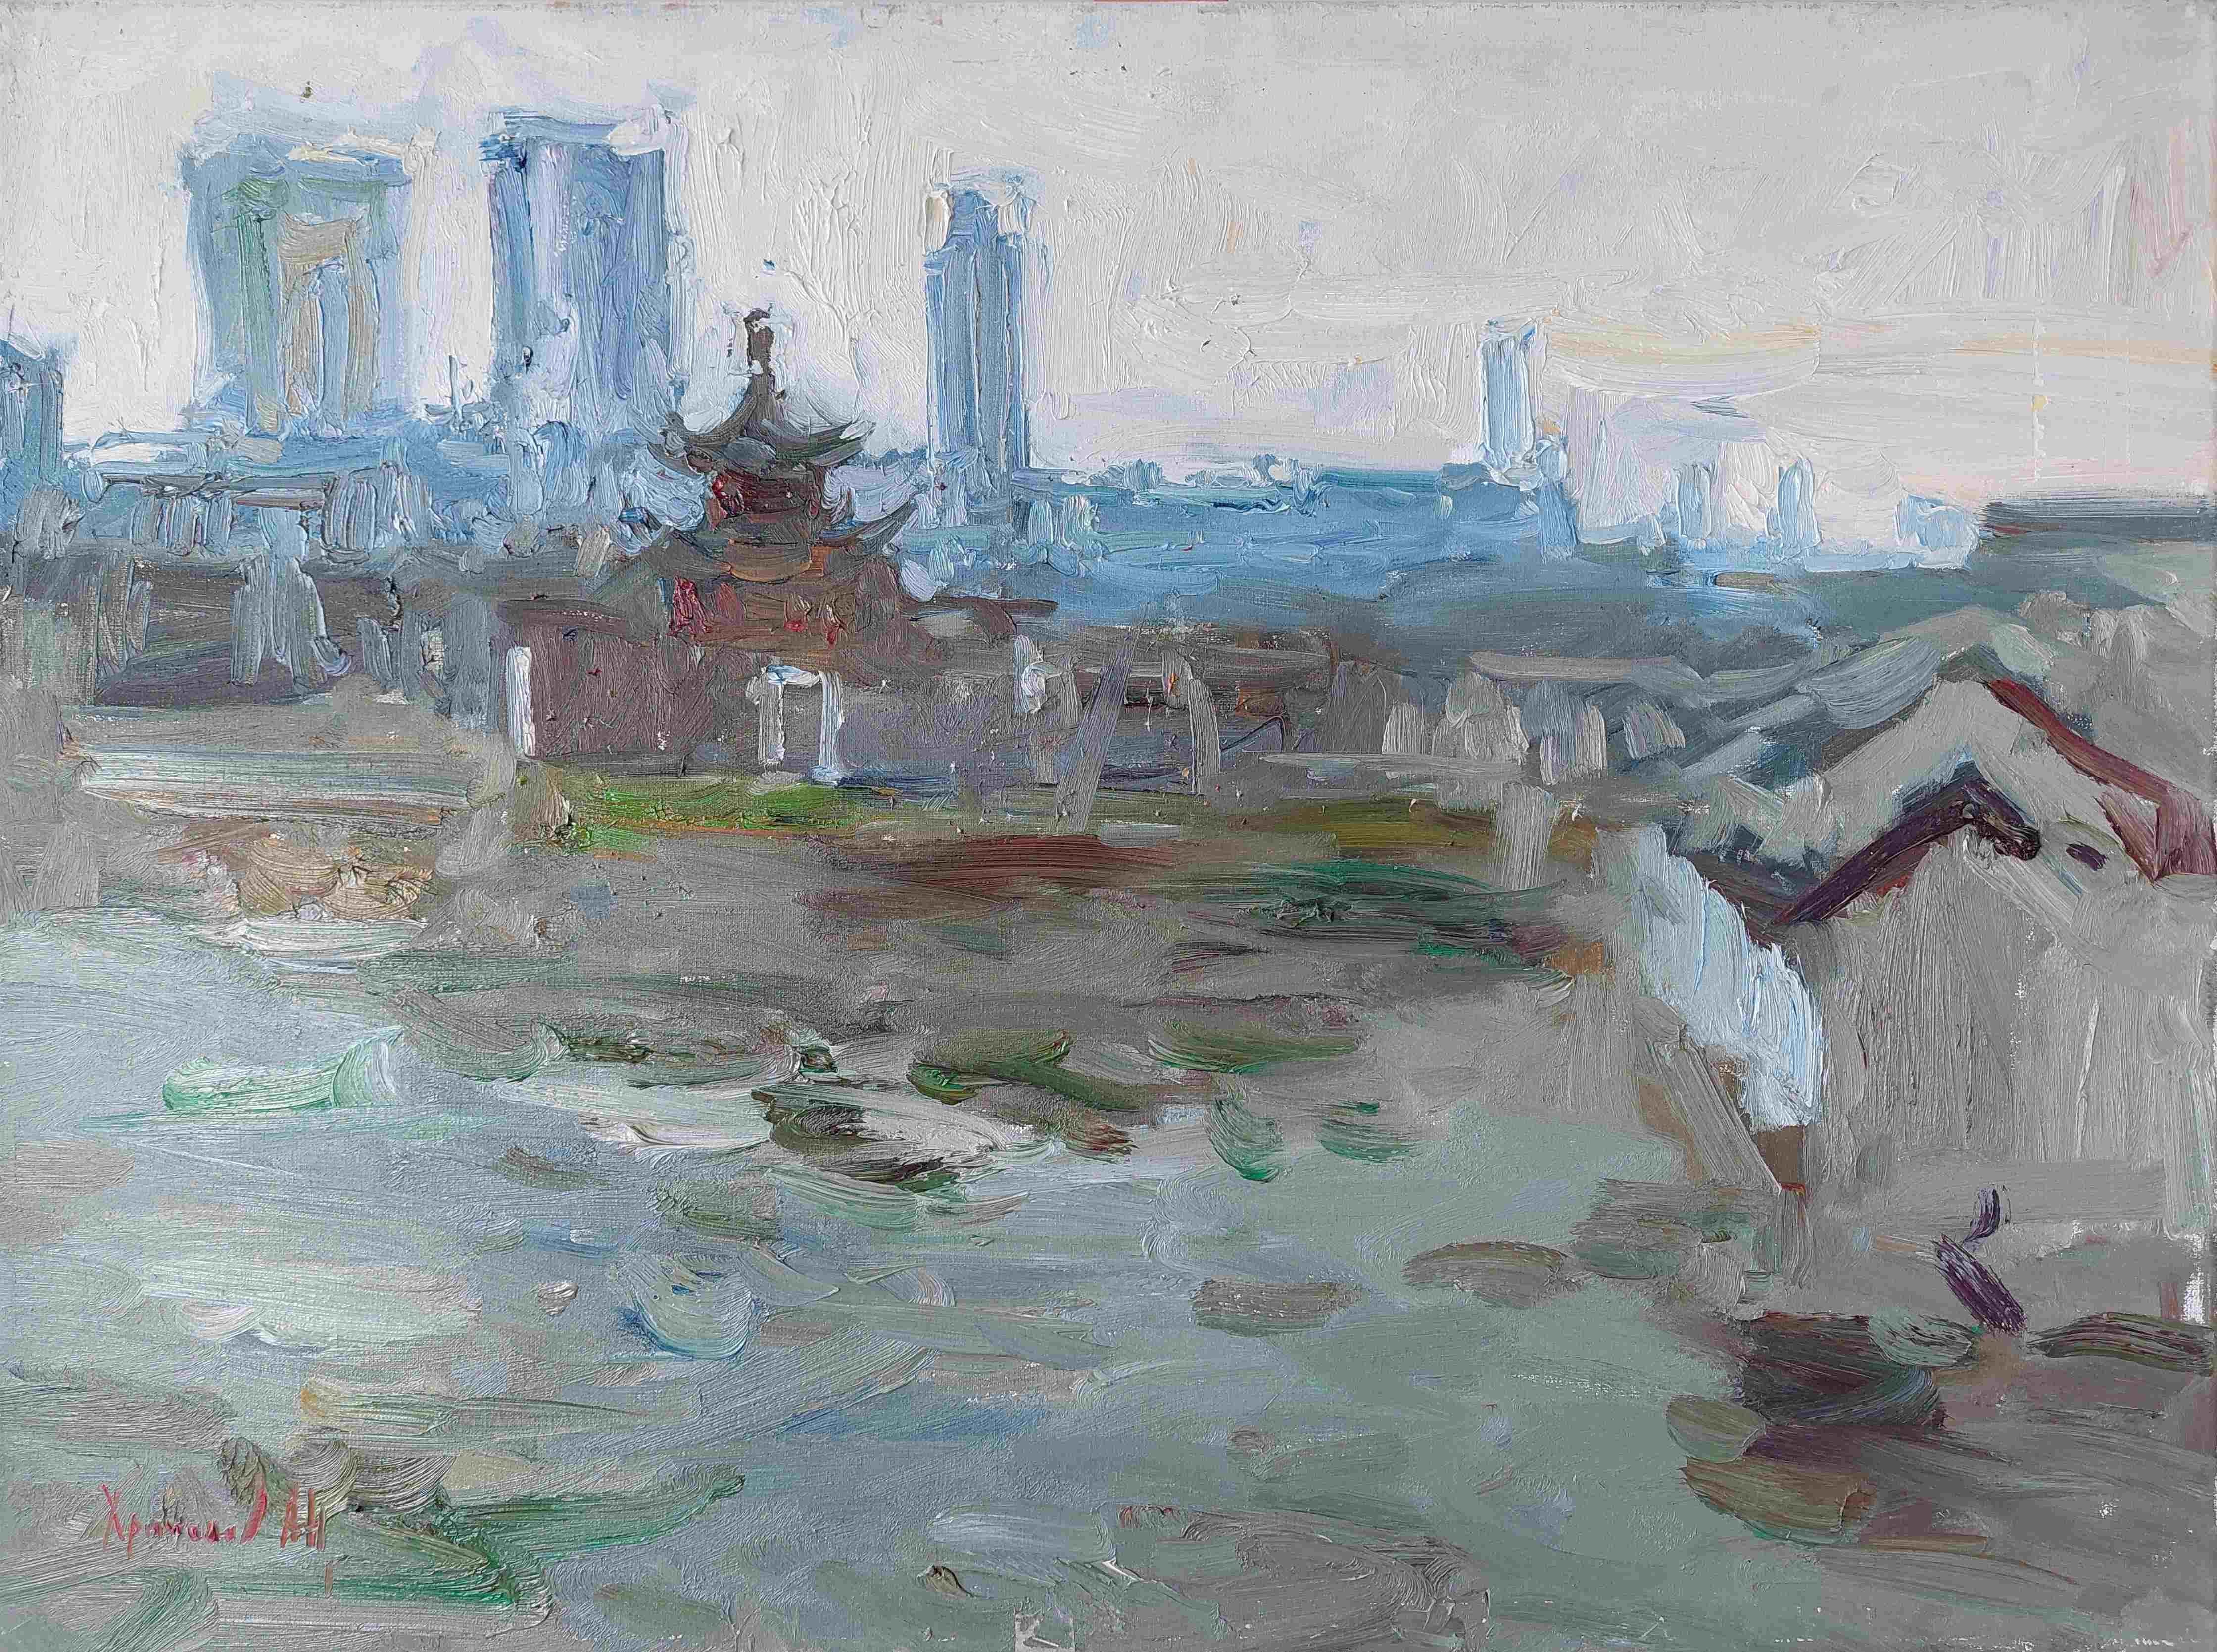  Oleksandr Khrapachov Landscape Painting - Among the houses. Suzhou